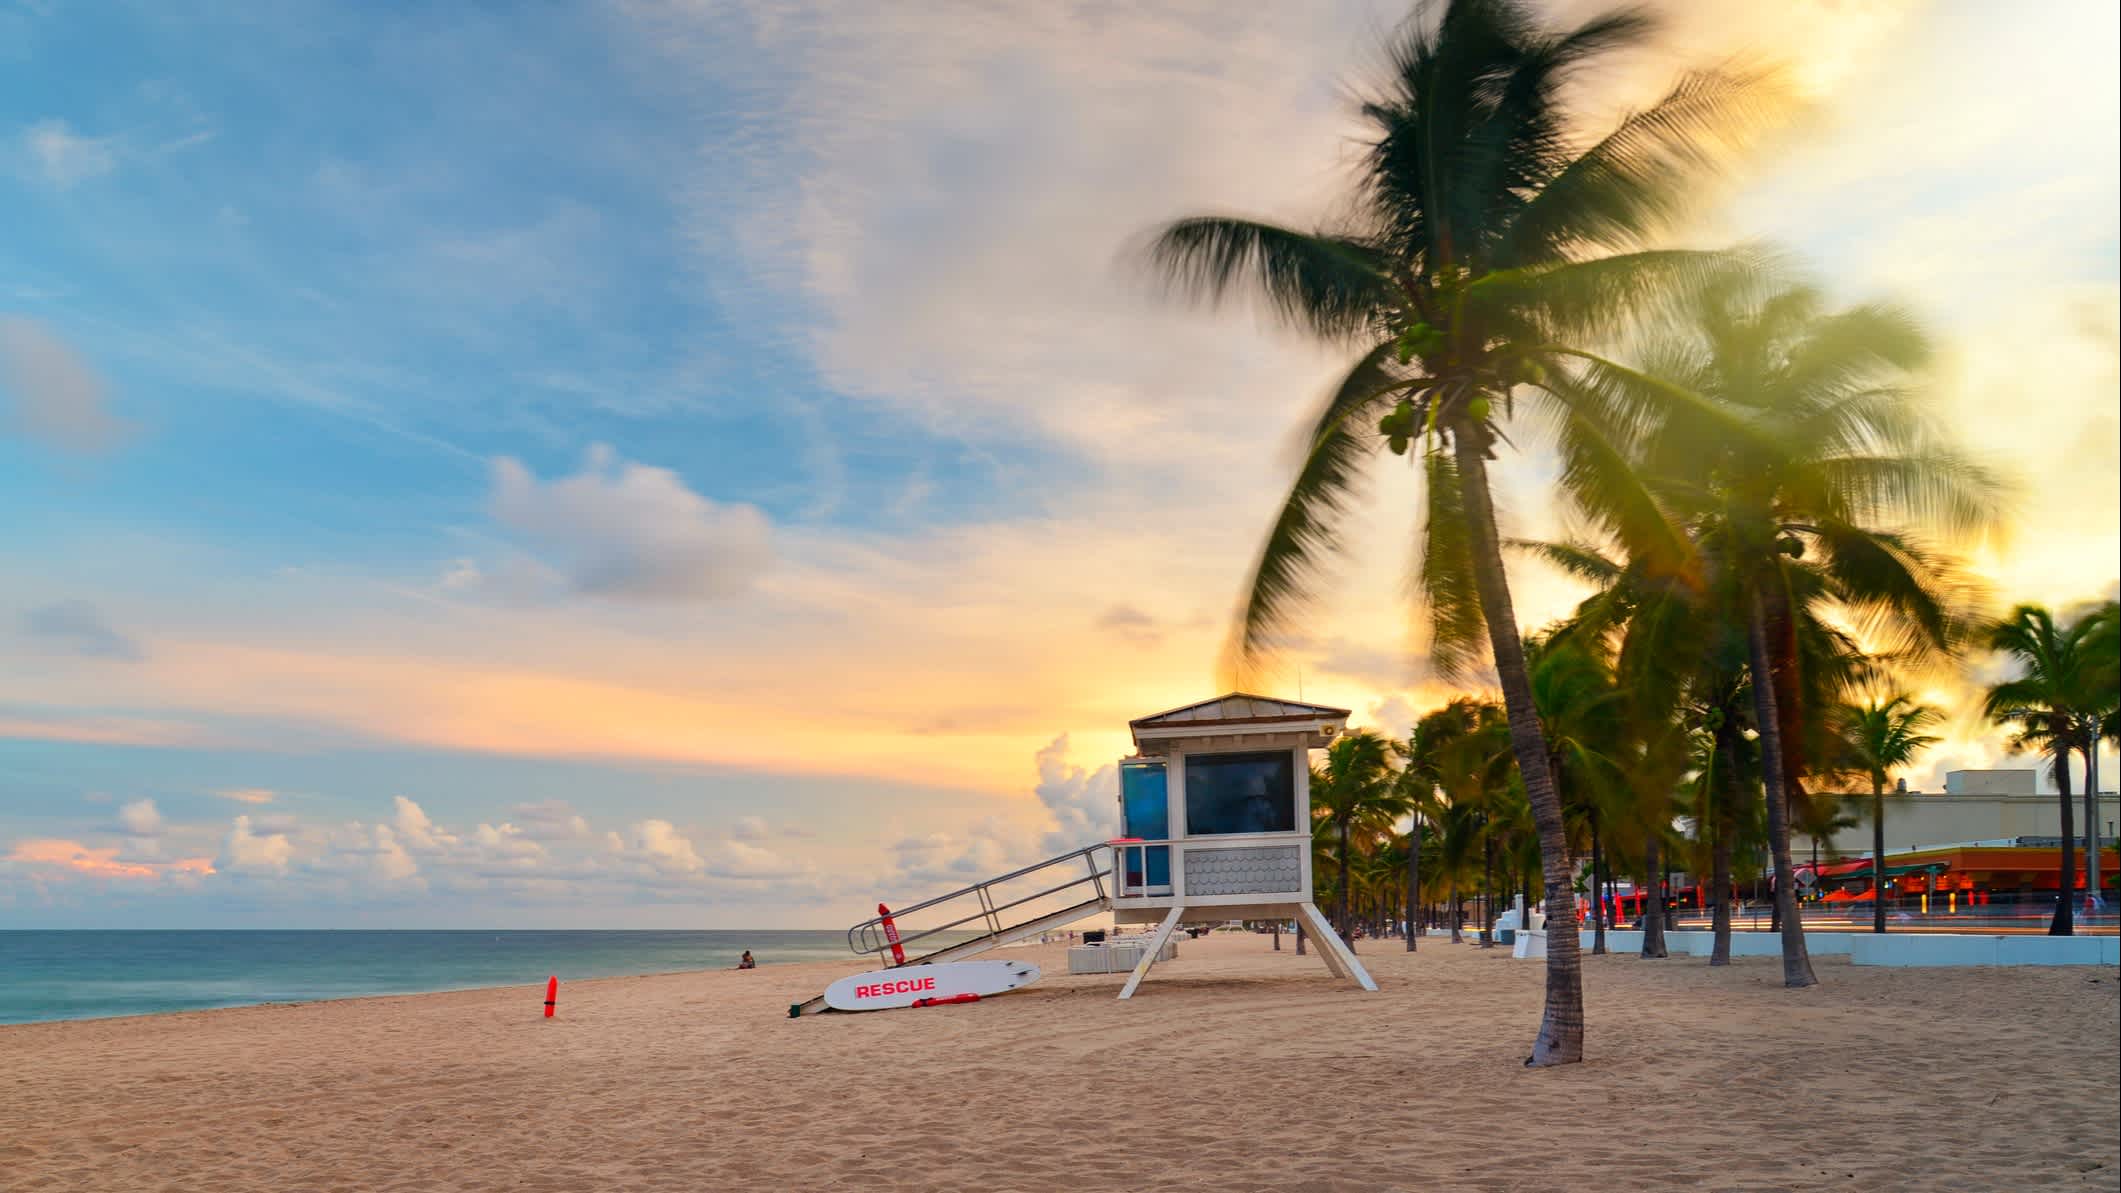 Coucher de soleil sur Sunrise Beach à Ft.Lauderdale avec palmiers et entrée à la plage.

